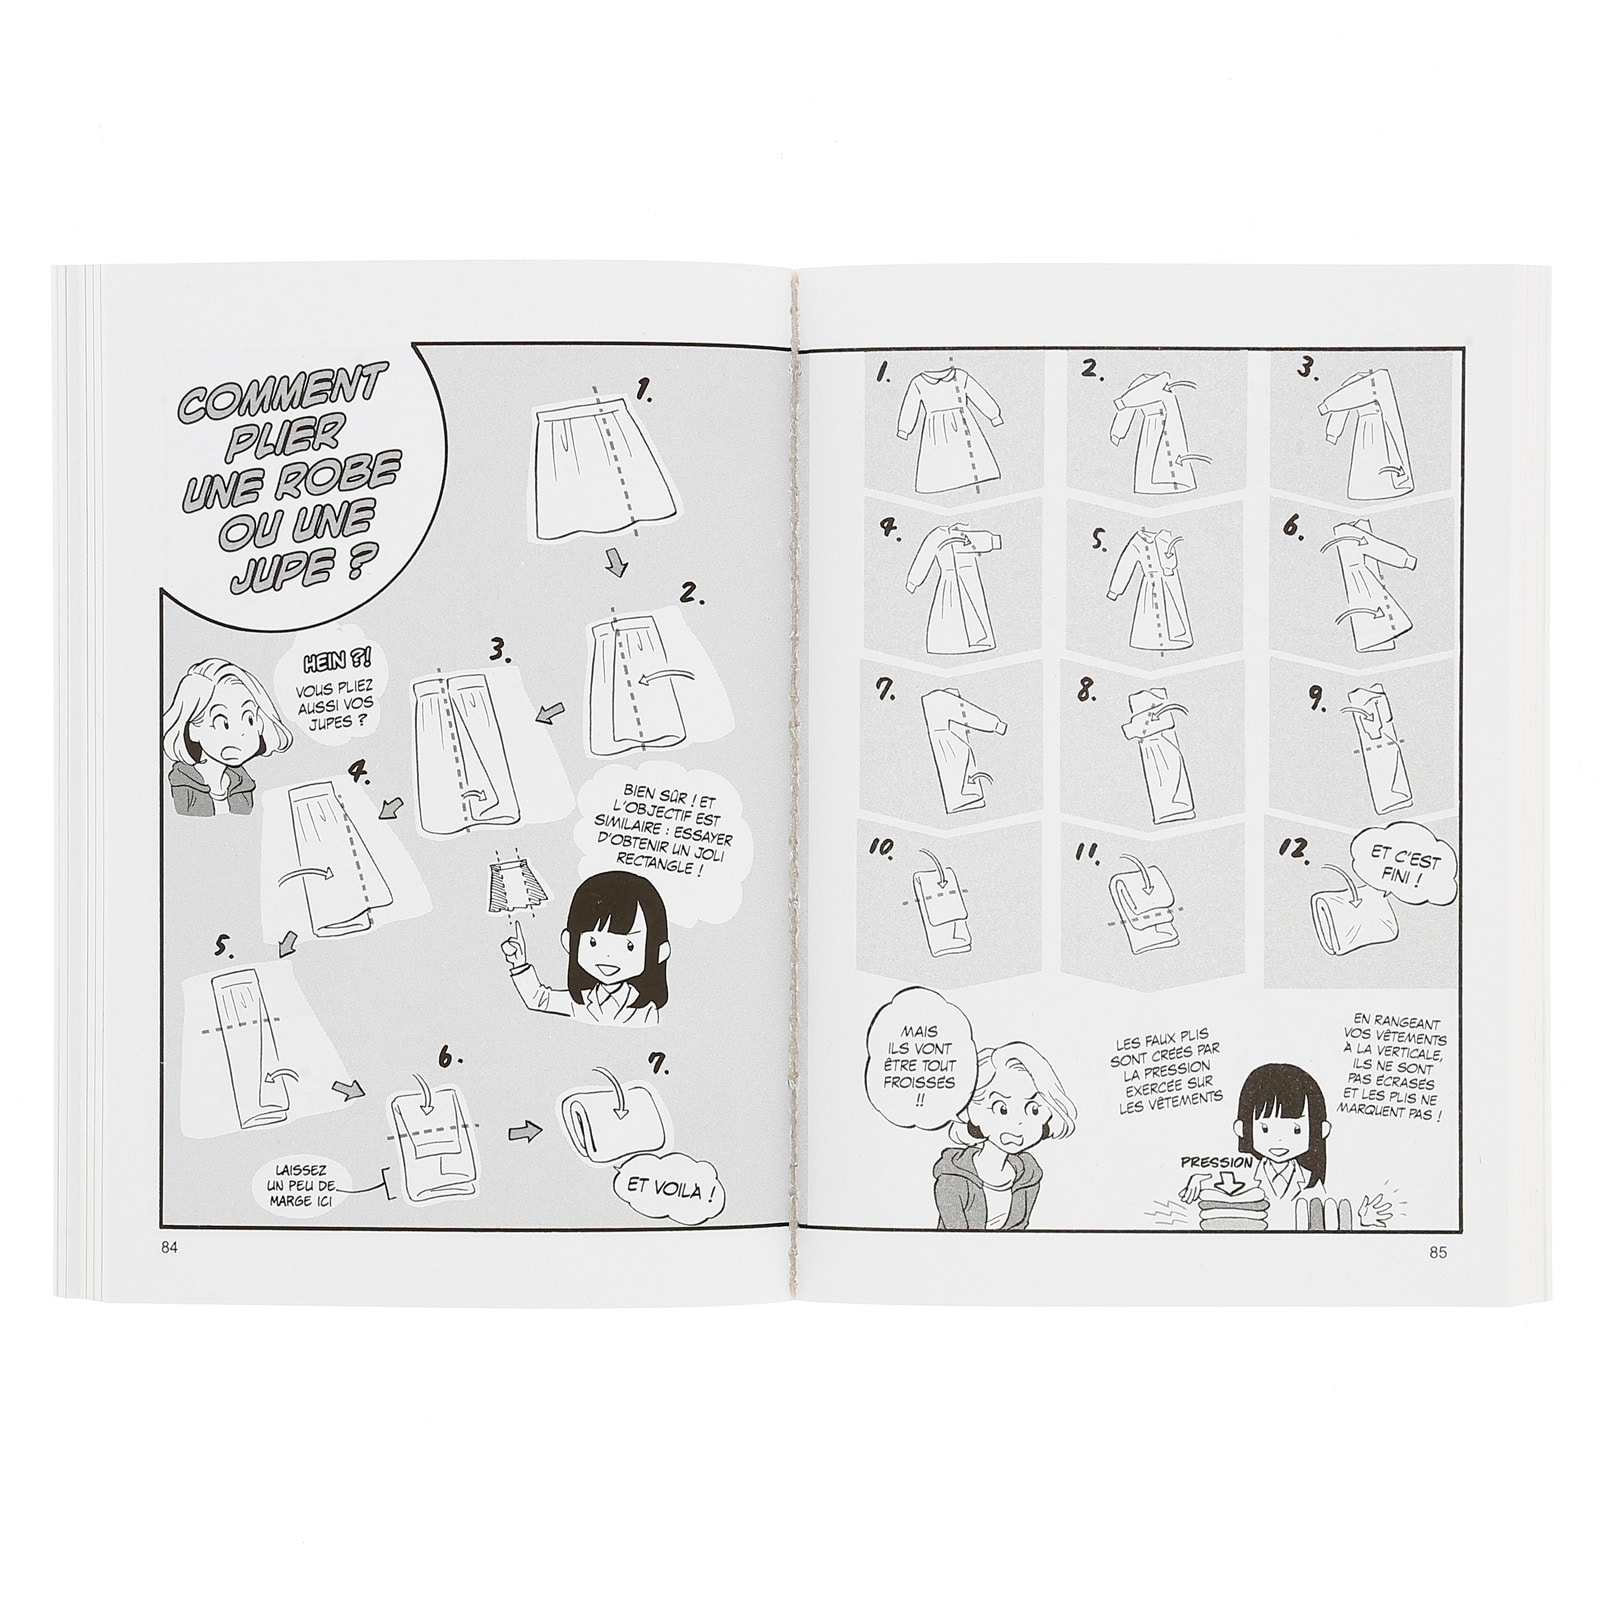 La Magie du Rangement Illustrée, Marie Kondo,Yuko Uramoto